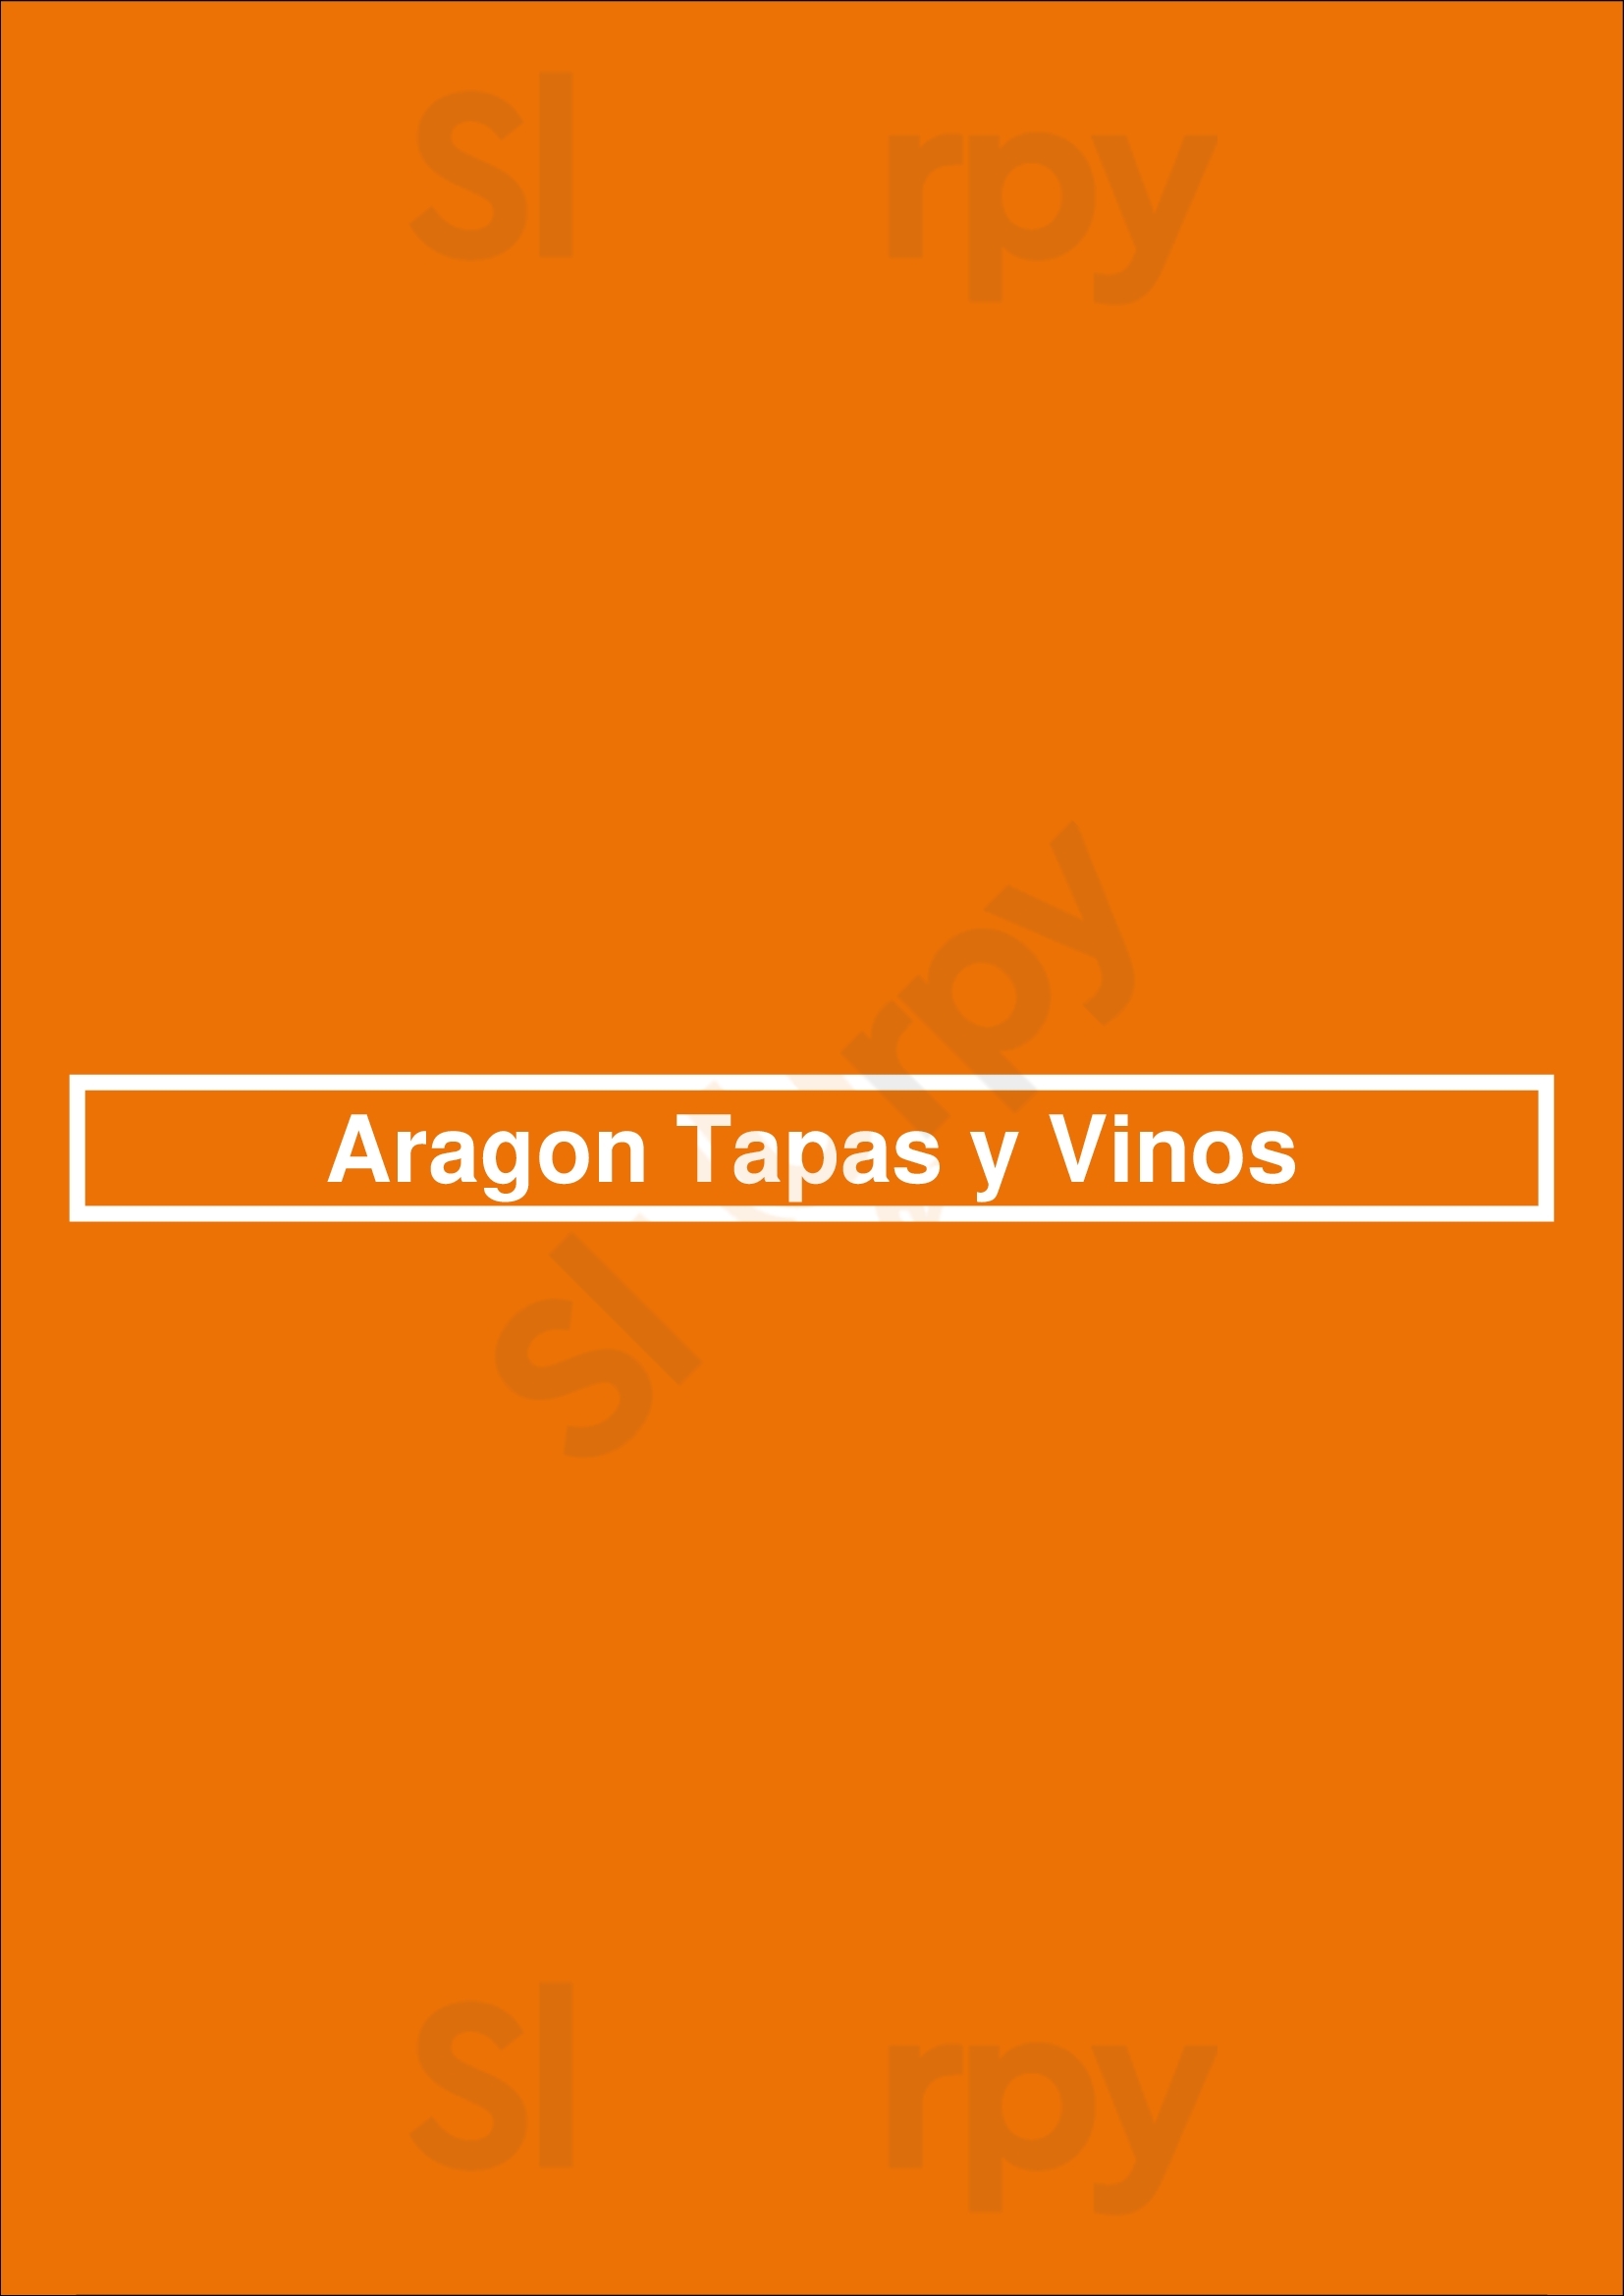 Aragon Tapas Y Vinos Bruxelles Menu - 1